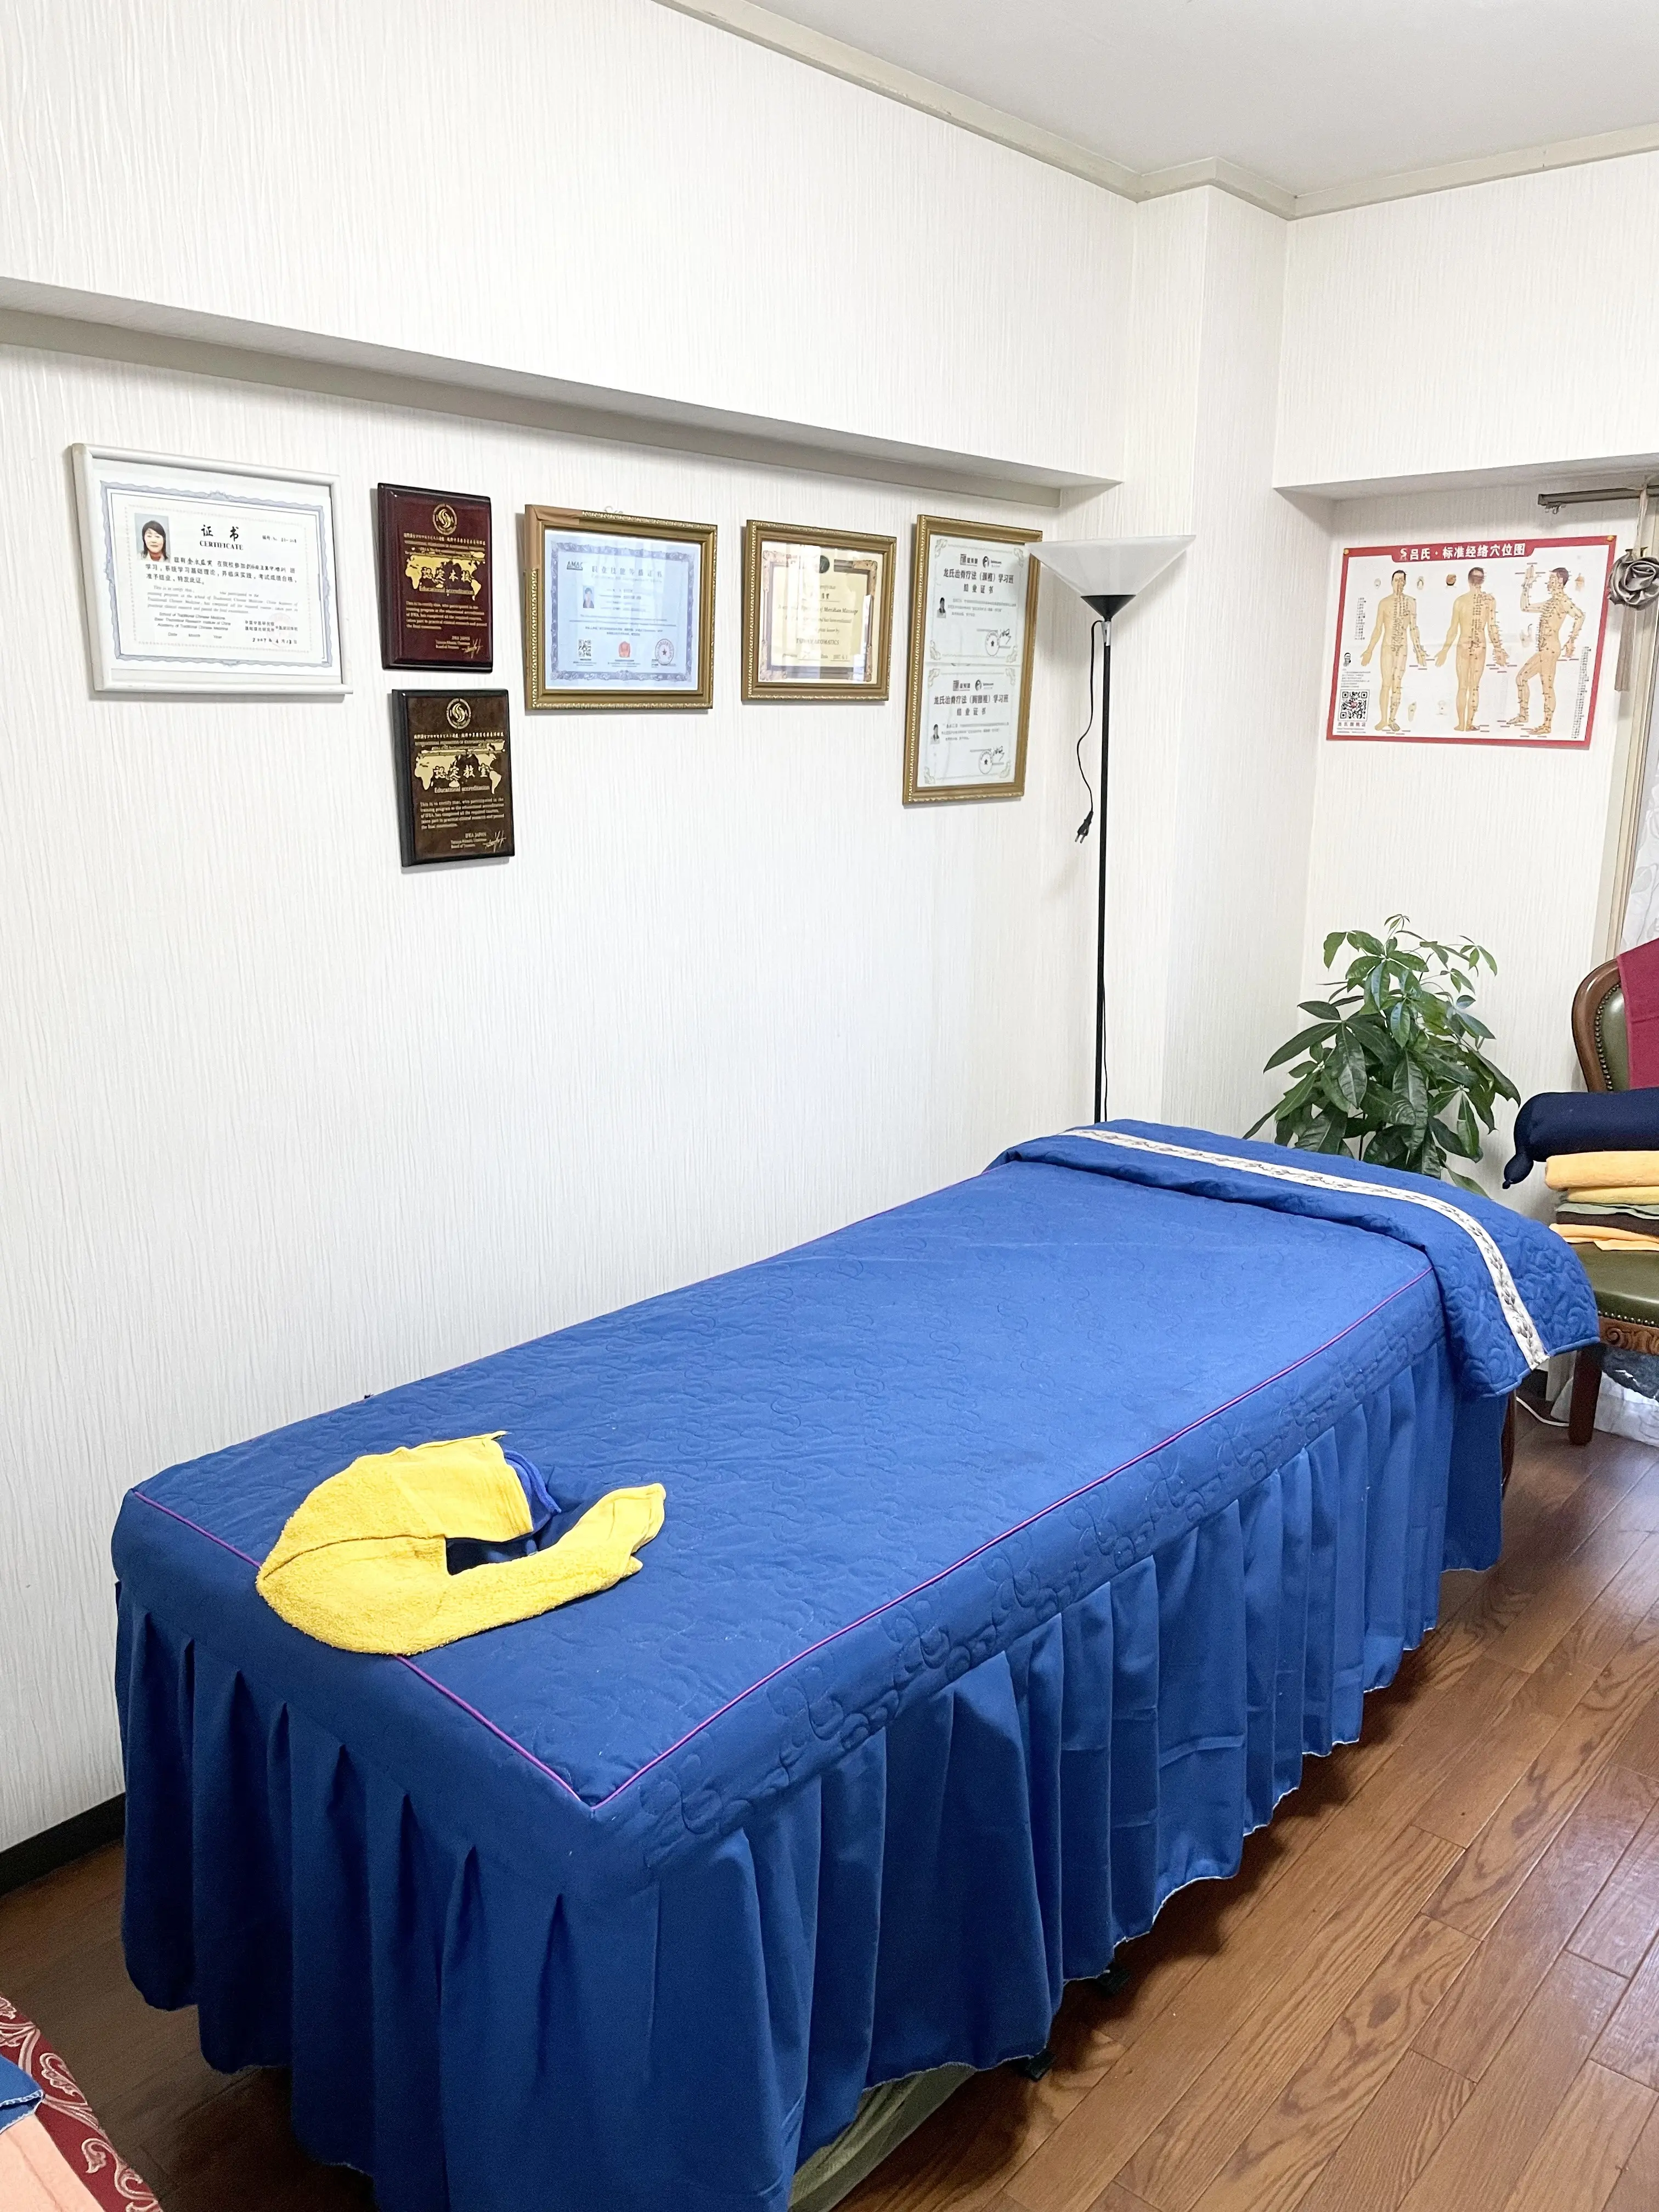 漢方アロマ施術と指導 漢方養成院、認定証、室内、サロン内、ベッド、施術ベッド、青、ベッドカバー、